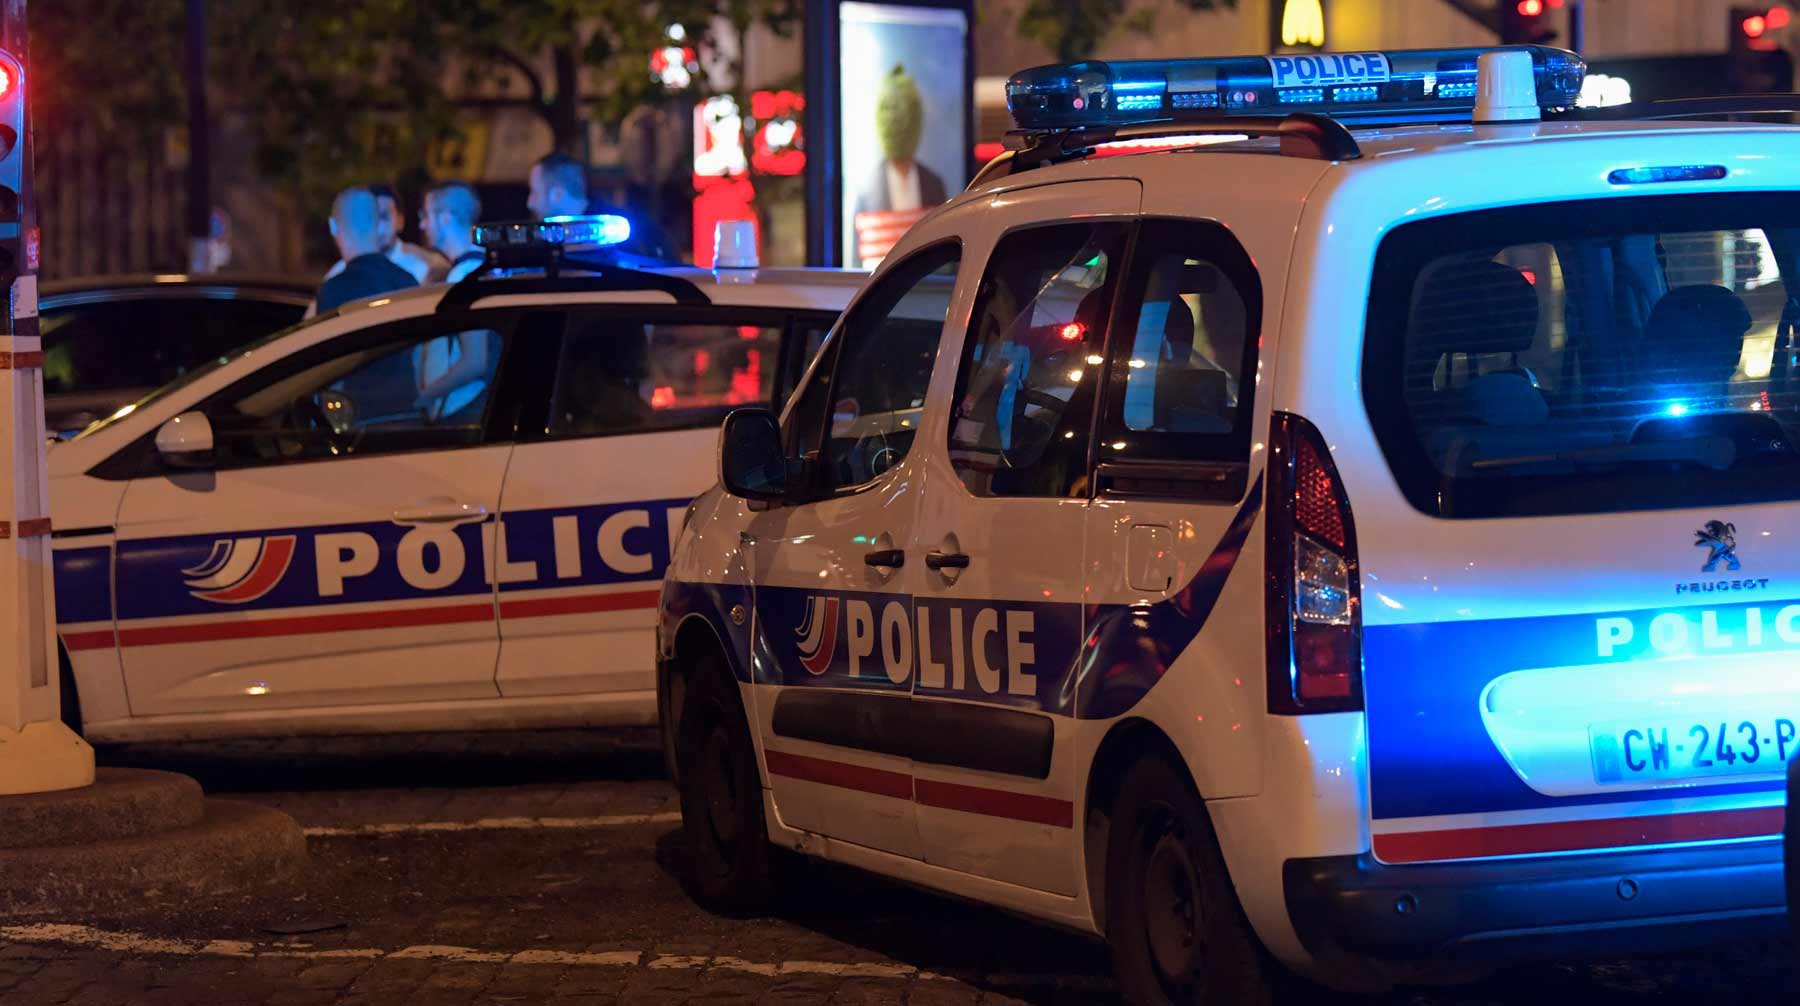 Dailystorm - Во Франции мужчина застрелил трех жандармов и скрылся